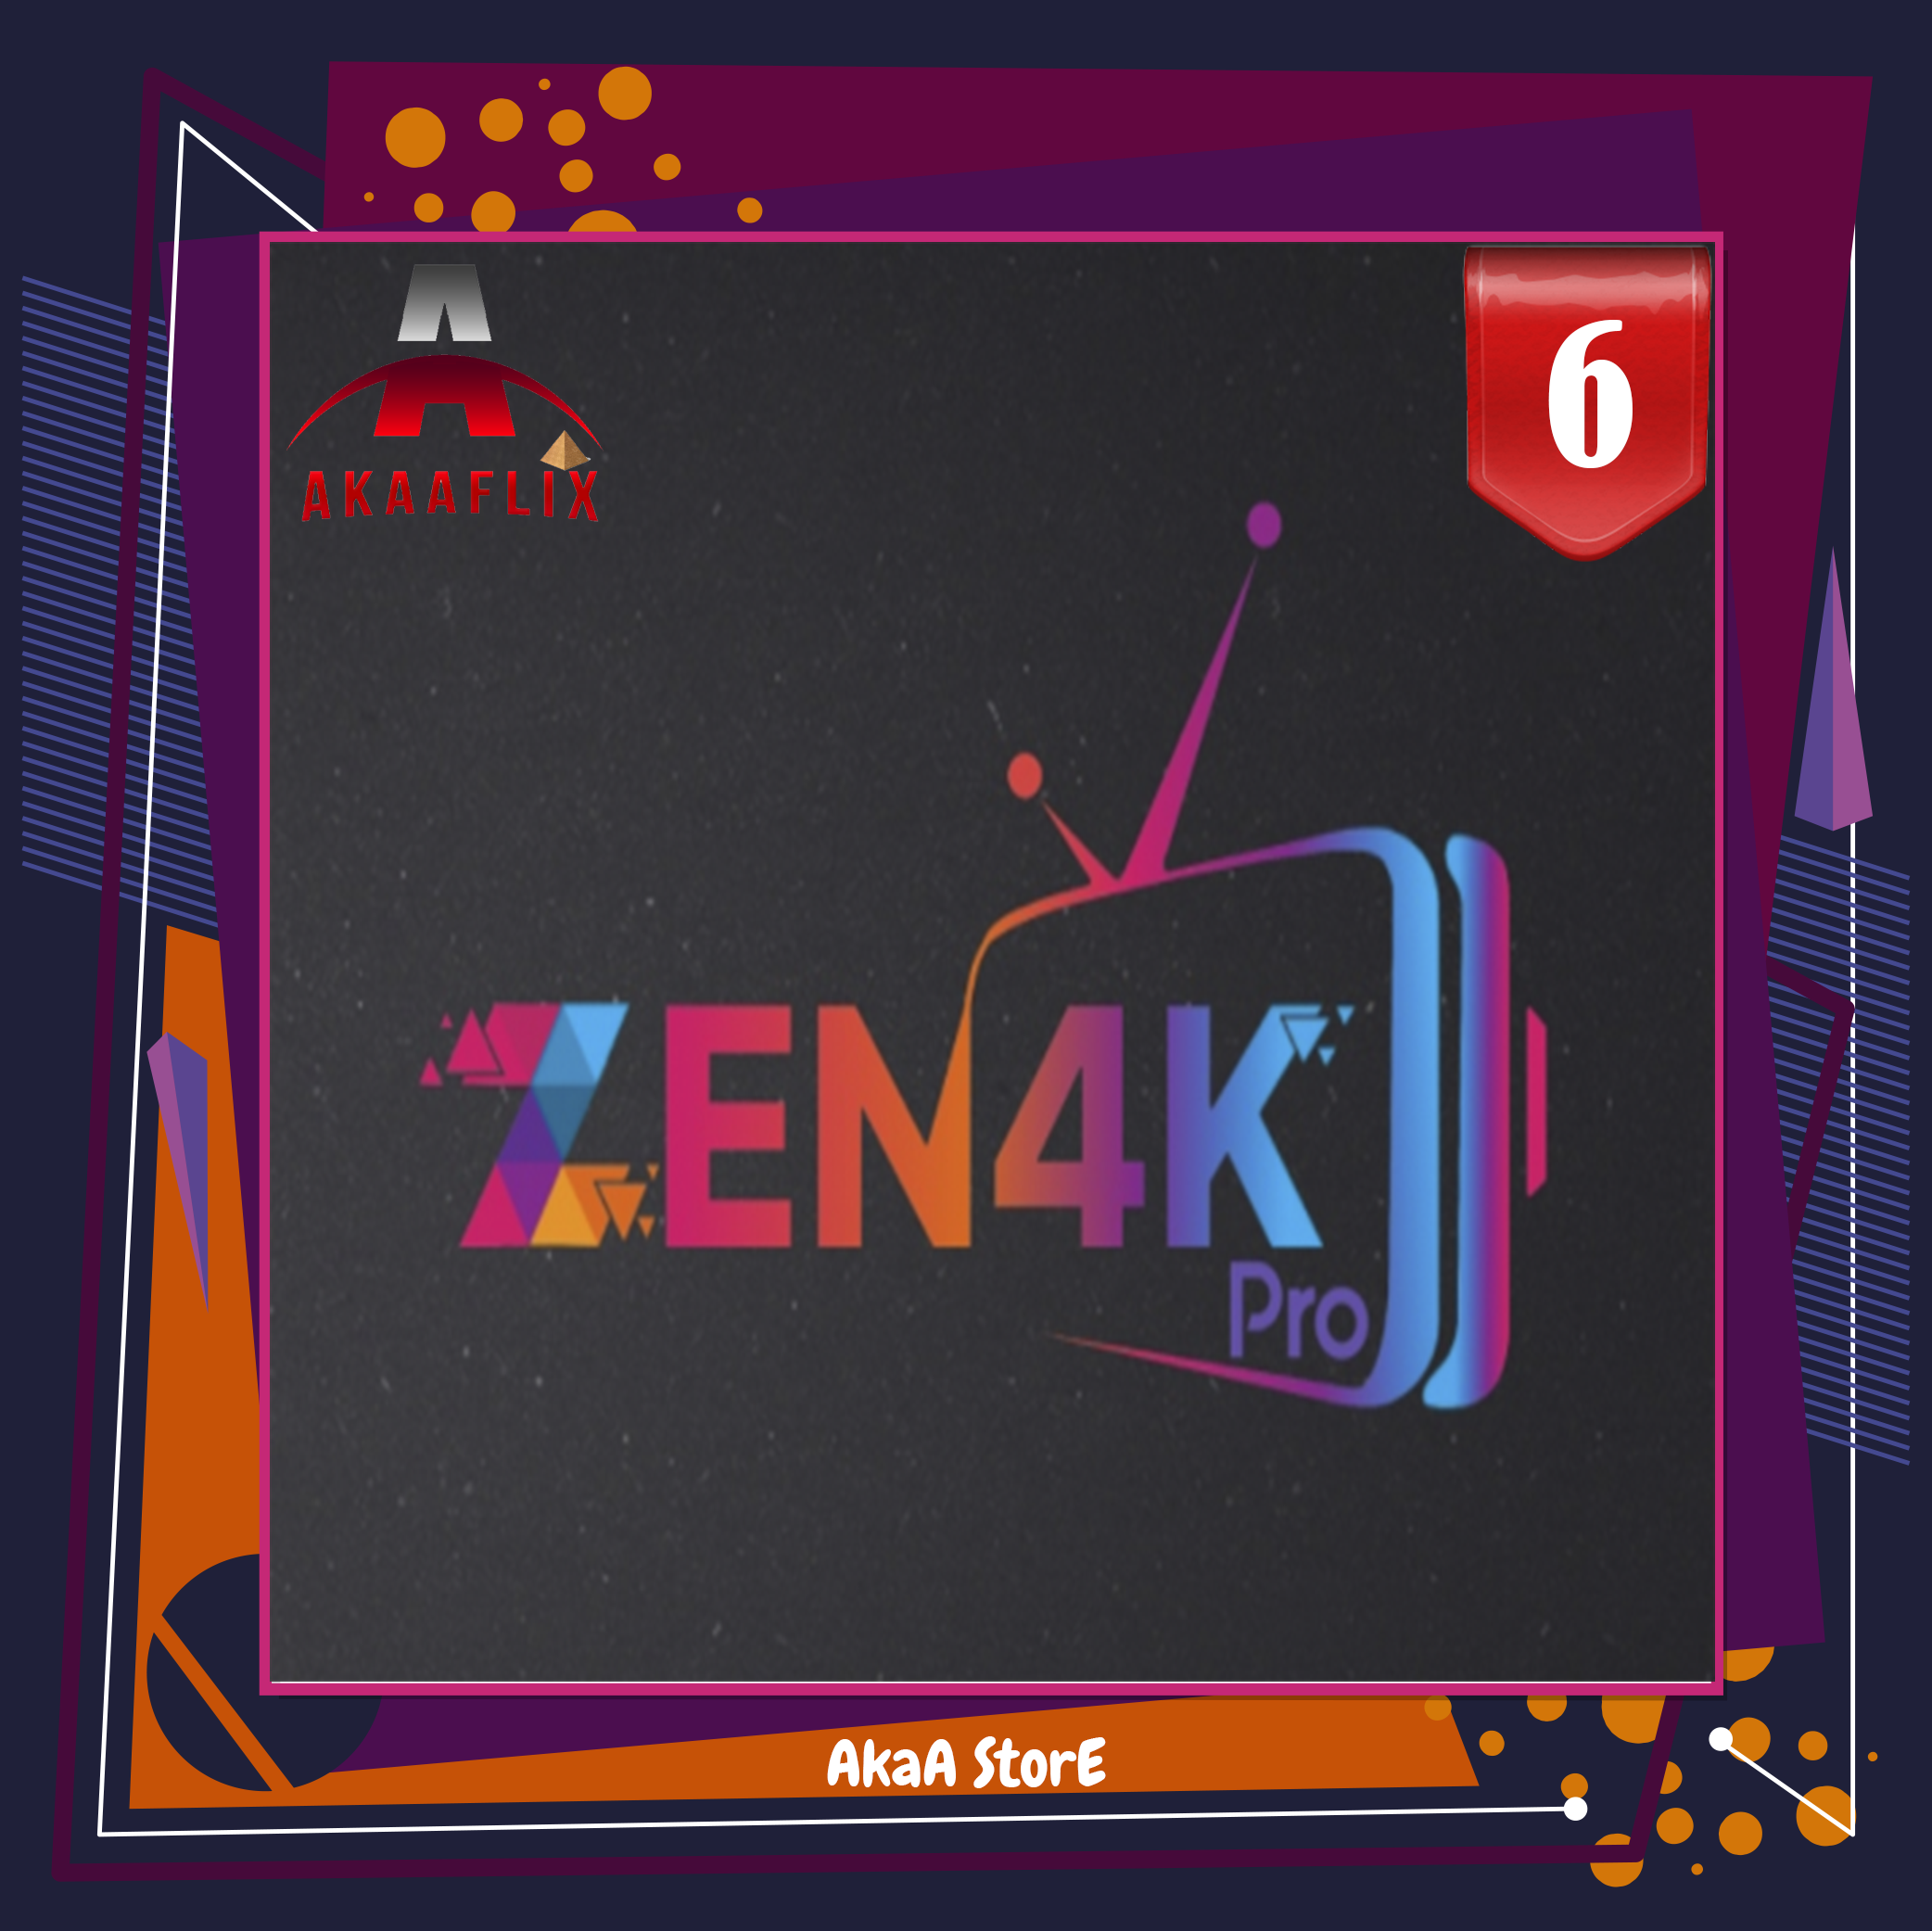 اشتراك ZEN4K زين 6 شهر